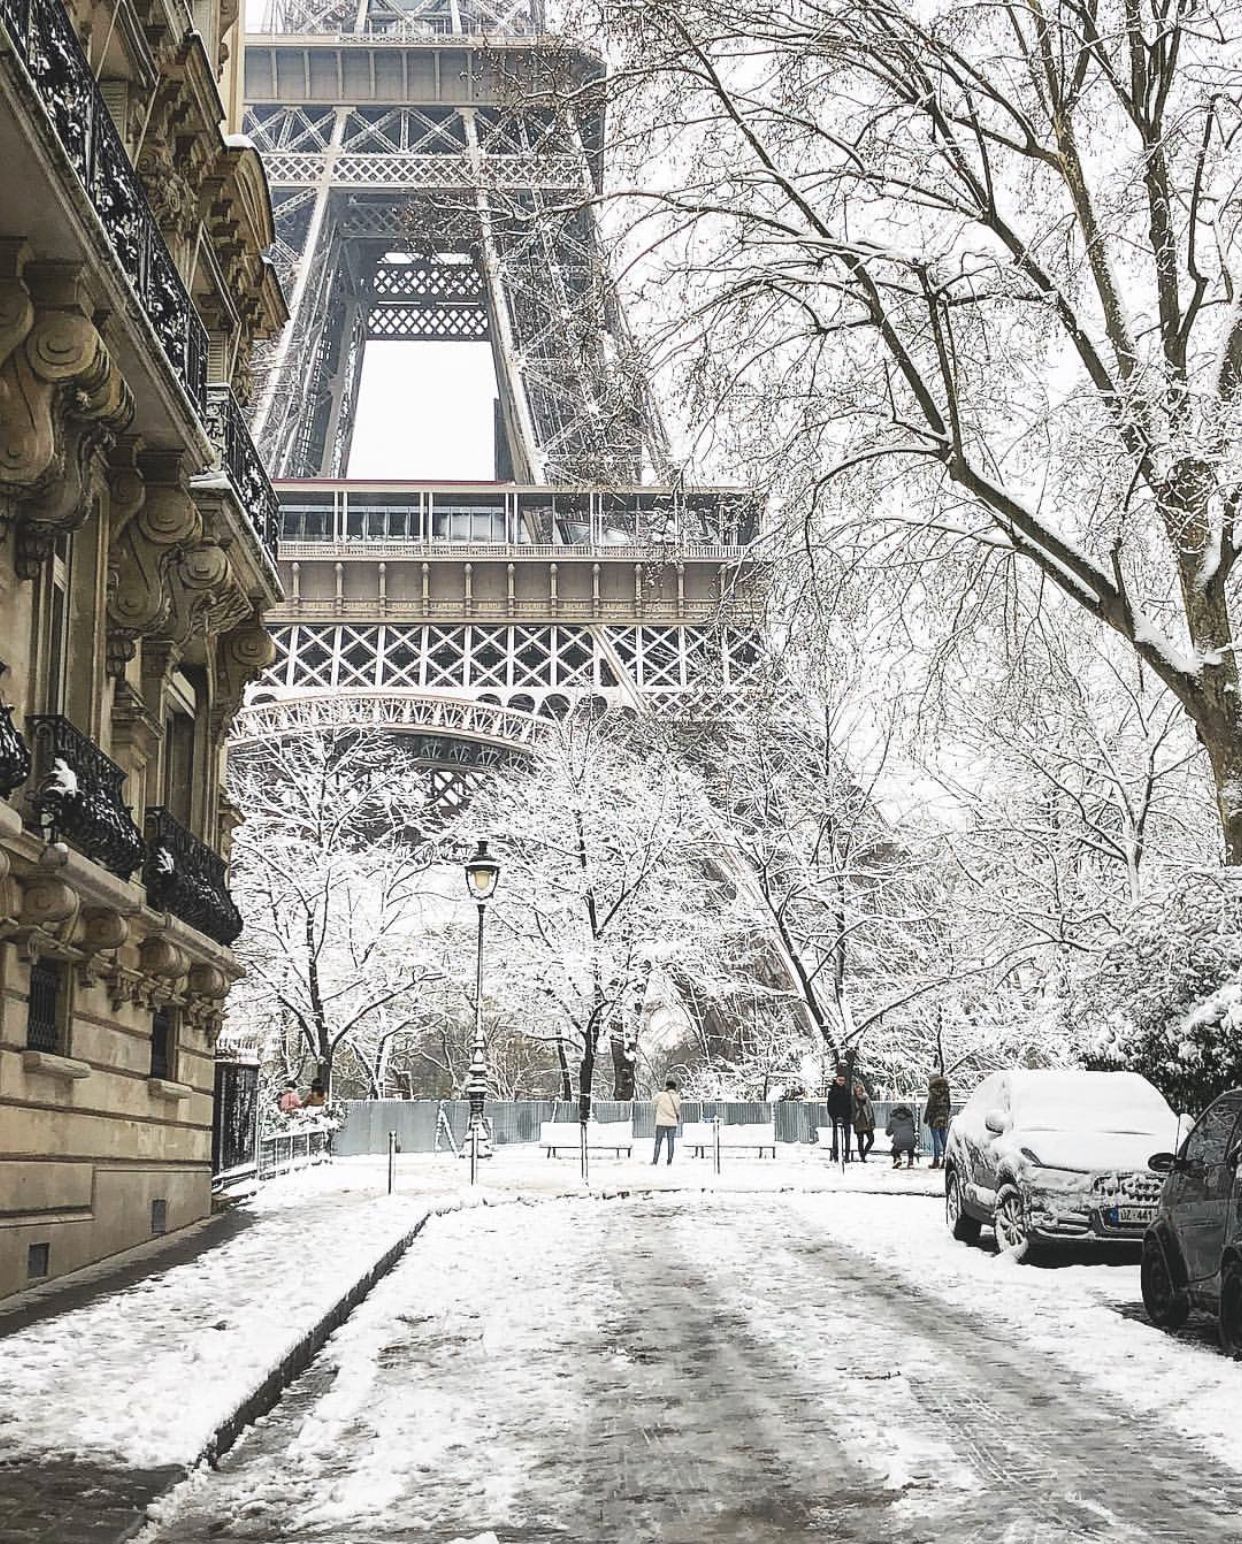 Eiffel Tower. Paris, France. Winter • Snow. France winter, Christmas in paris, Paris winter